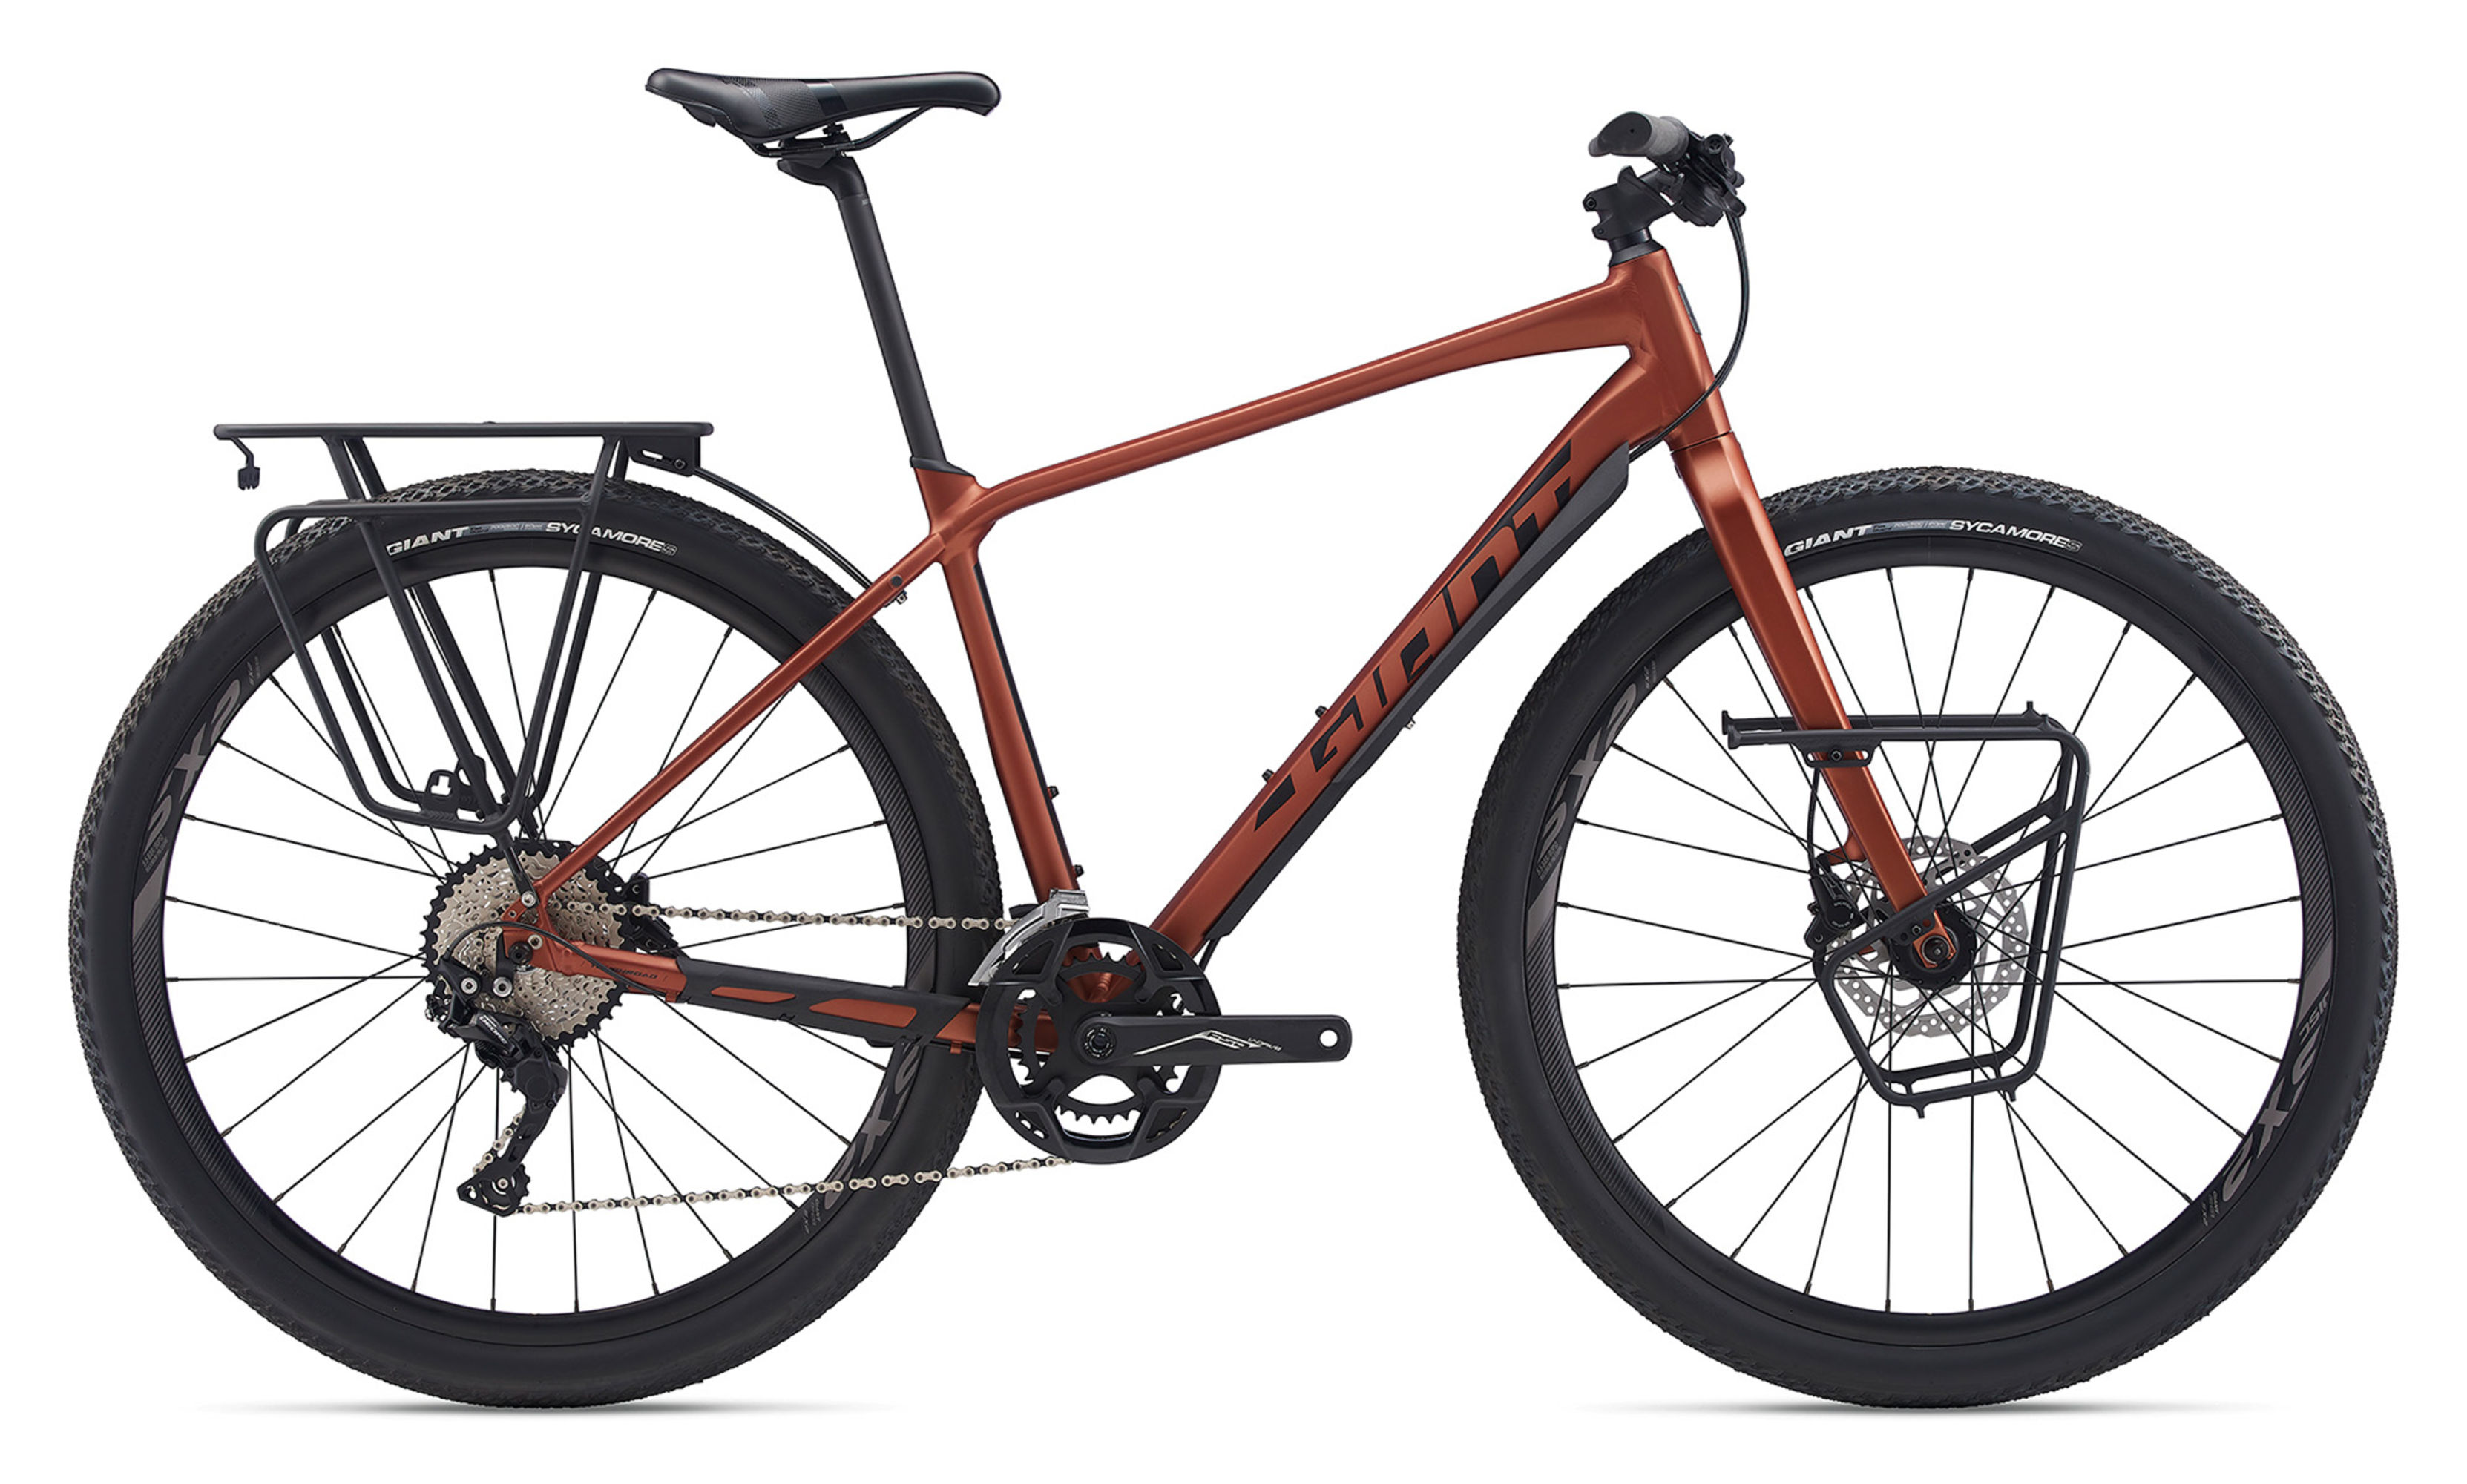  Отзывы о Городском велосипеде Giant ToughRoad SLR 1 2022